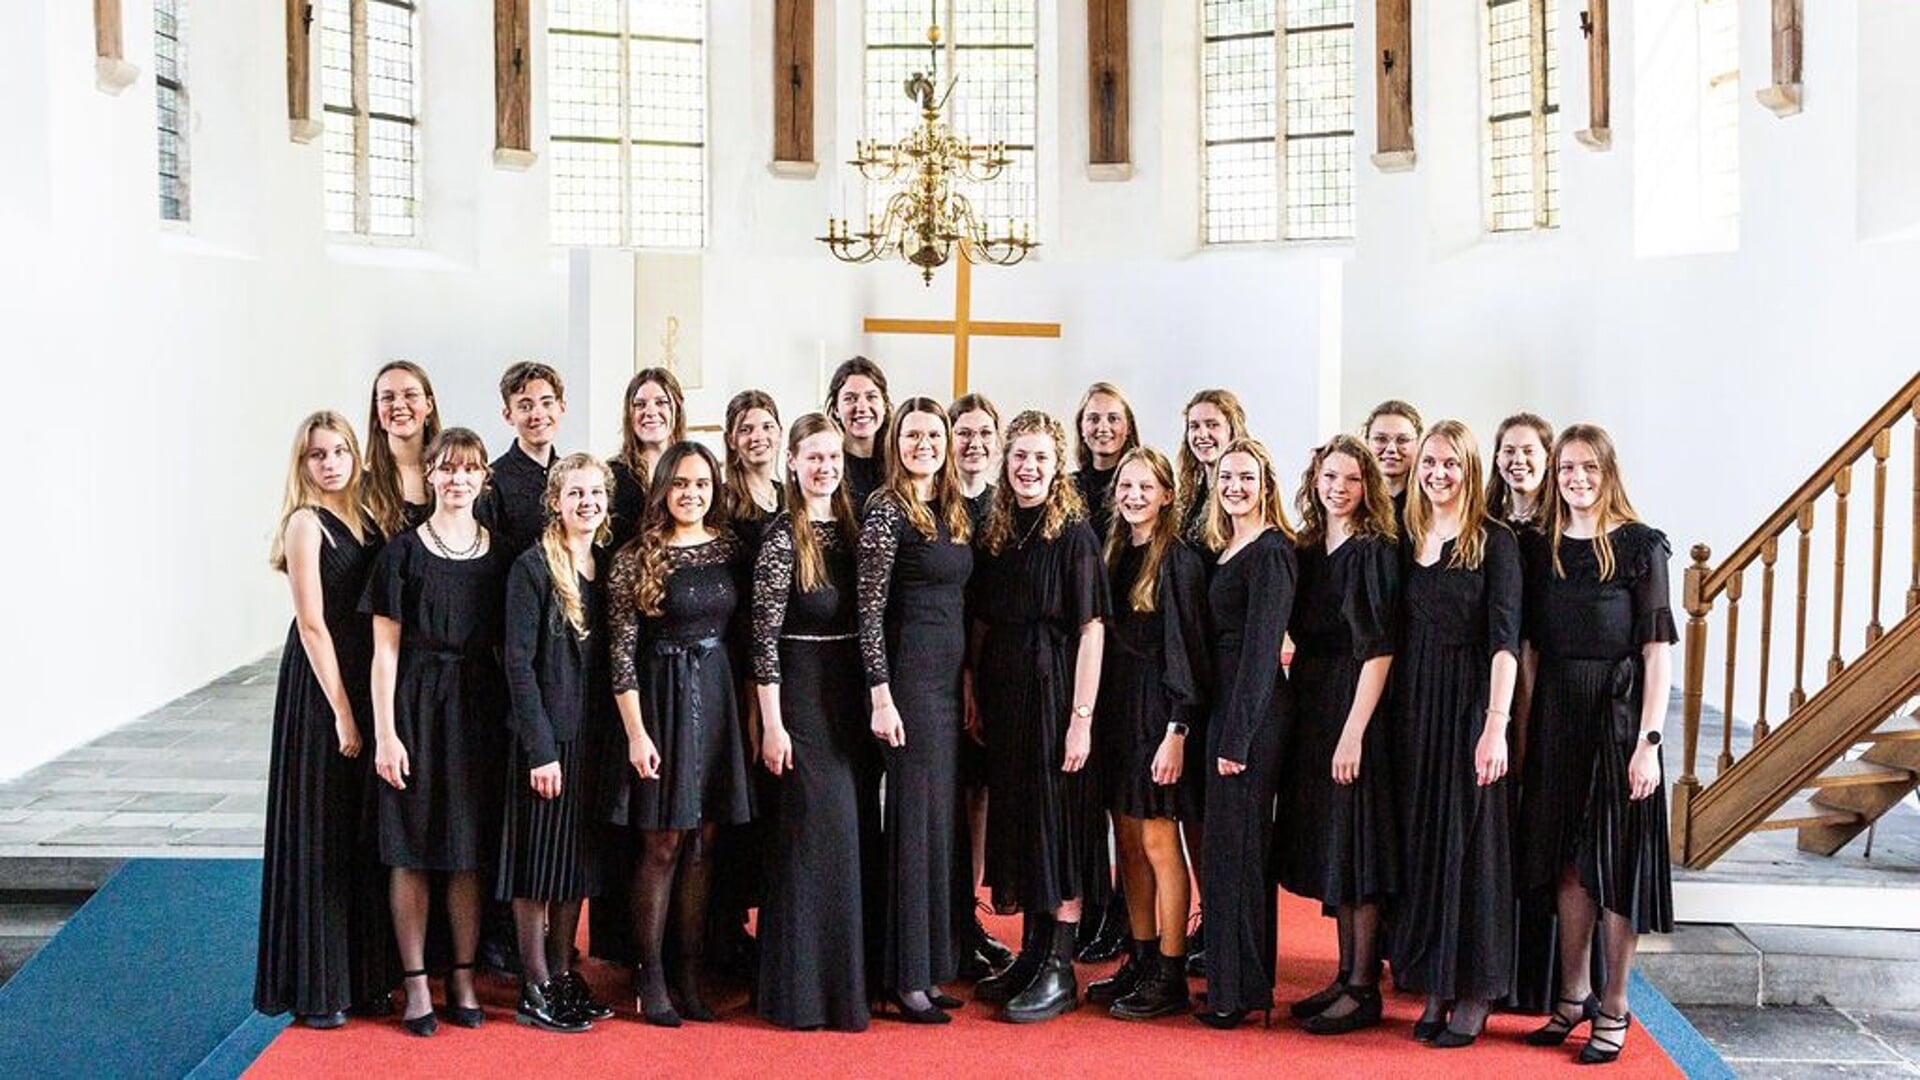 Het meisjeskoor van Ars Musica zingt op 6 april in de Sionskerk